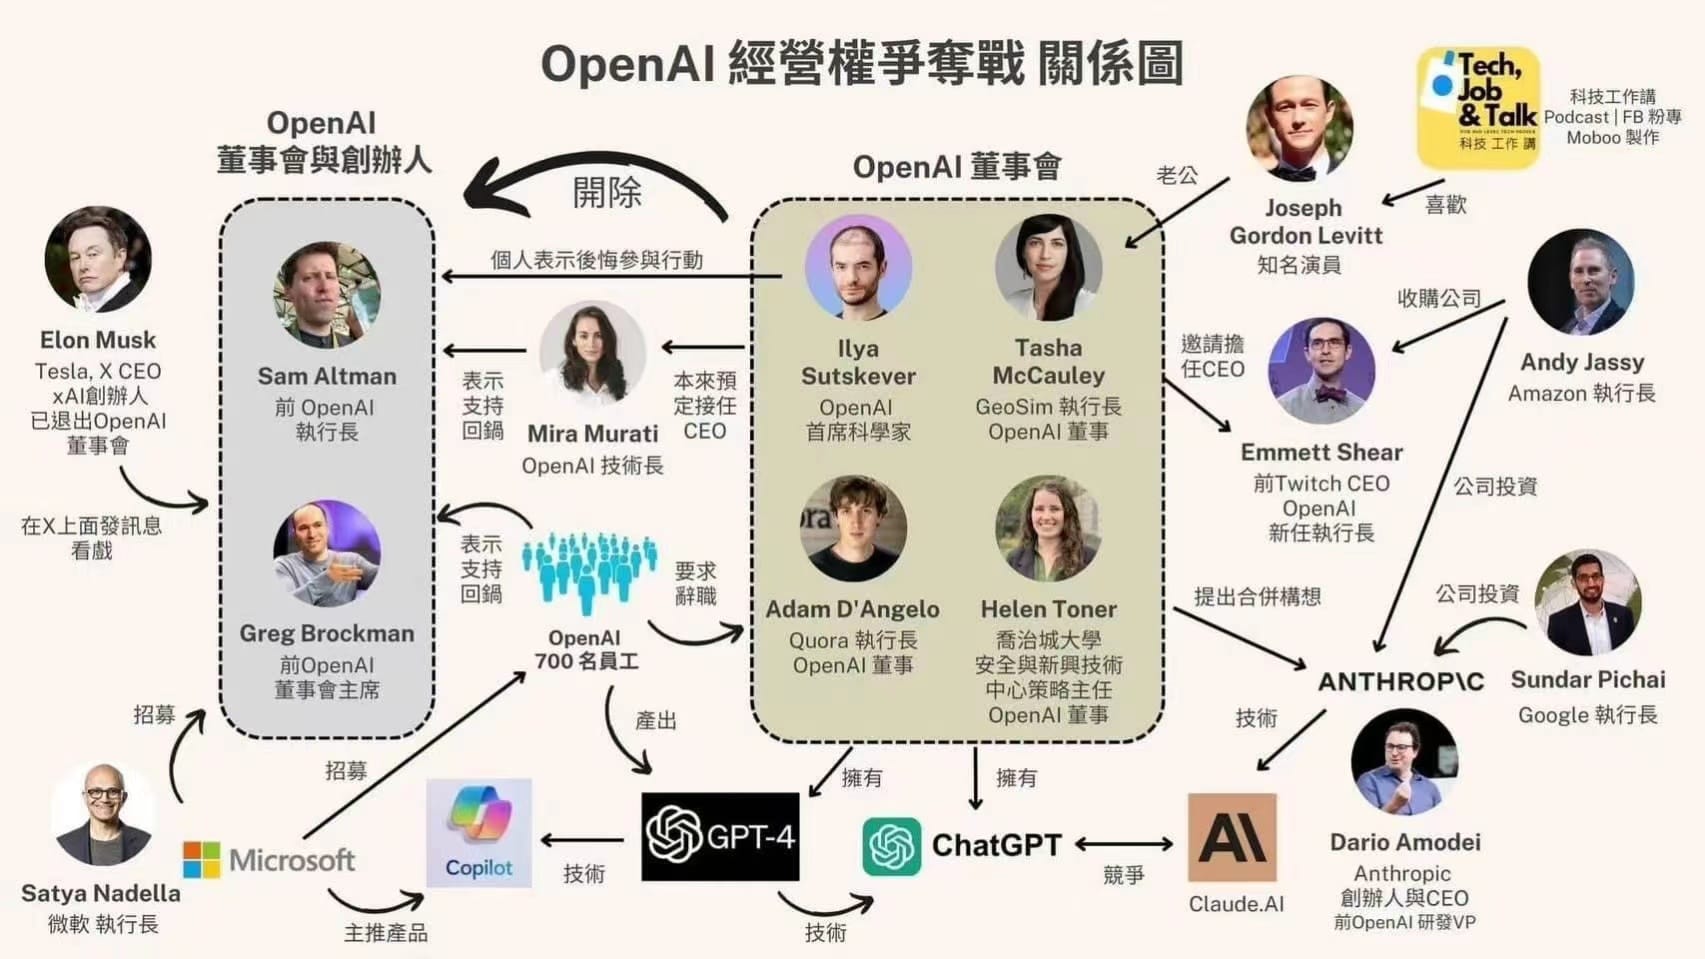 OpenAI “宫斗”引发的产品与技术的思考